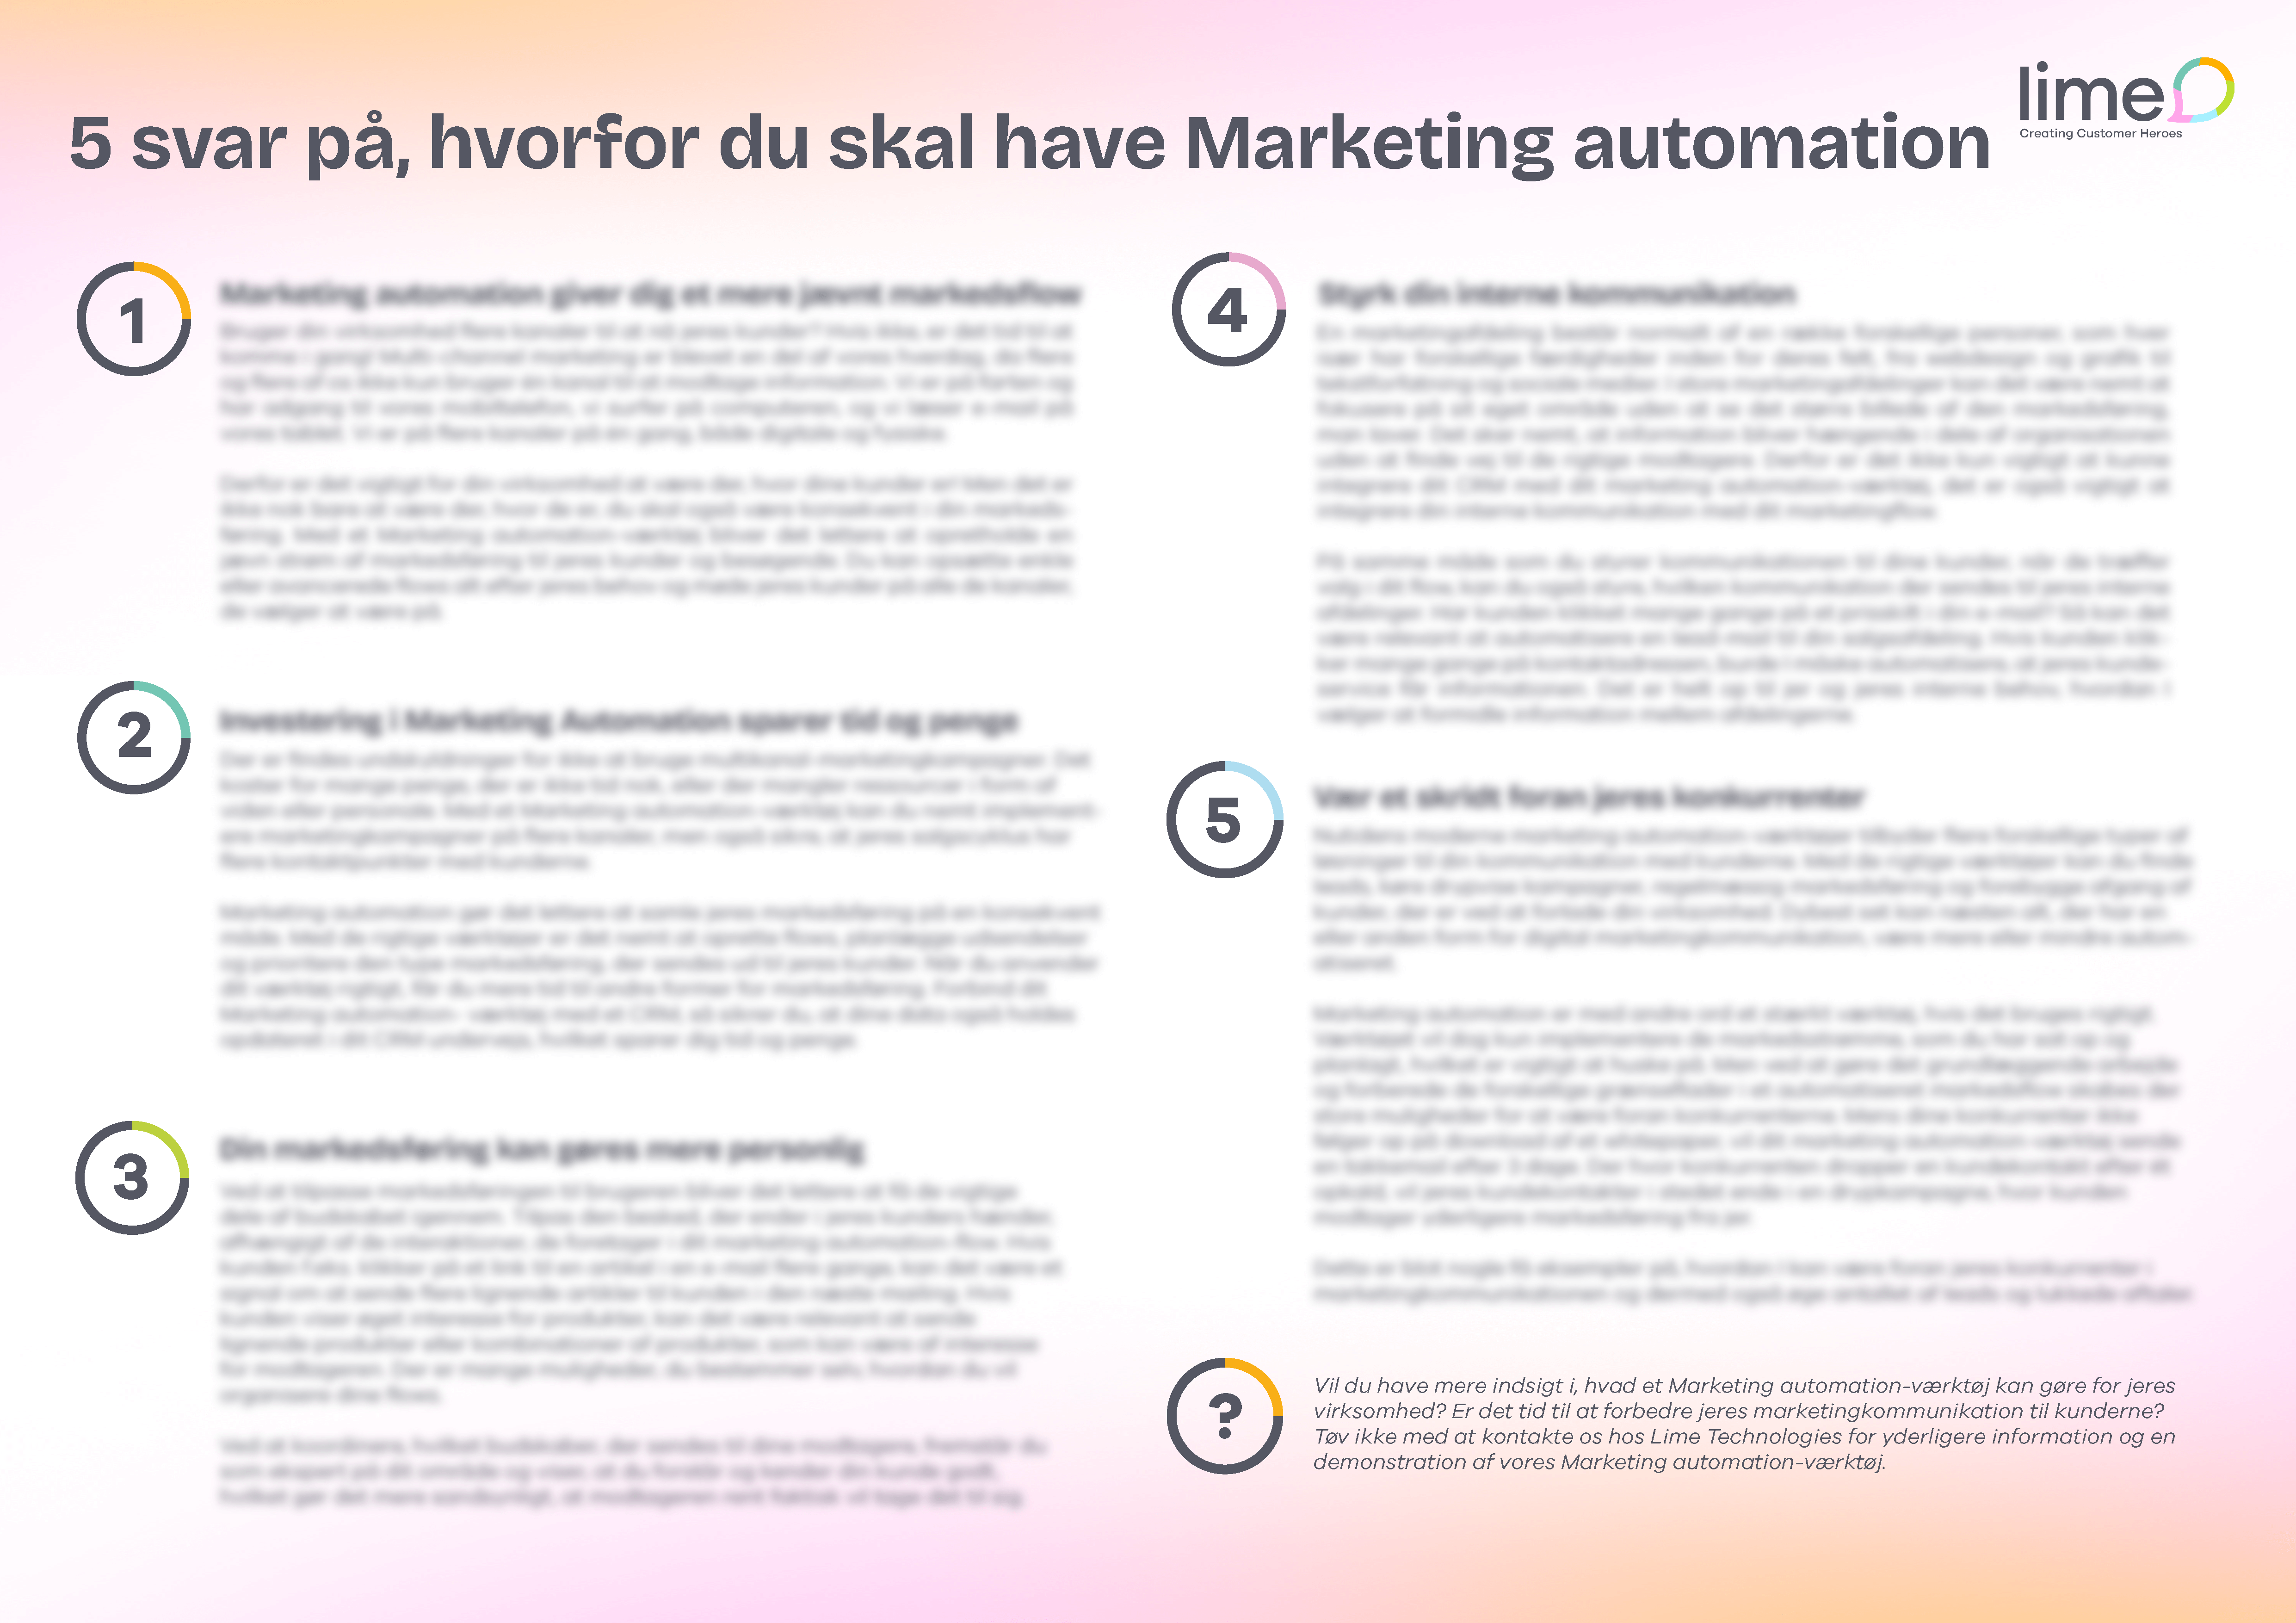 Poster: 5 svar på hvorfor du bør have Marketing Automation